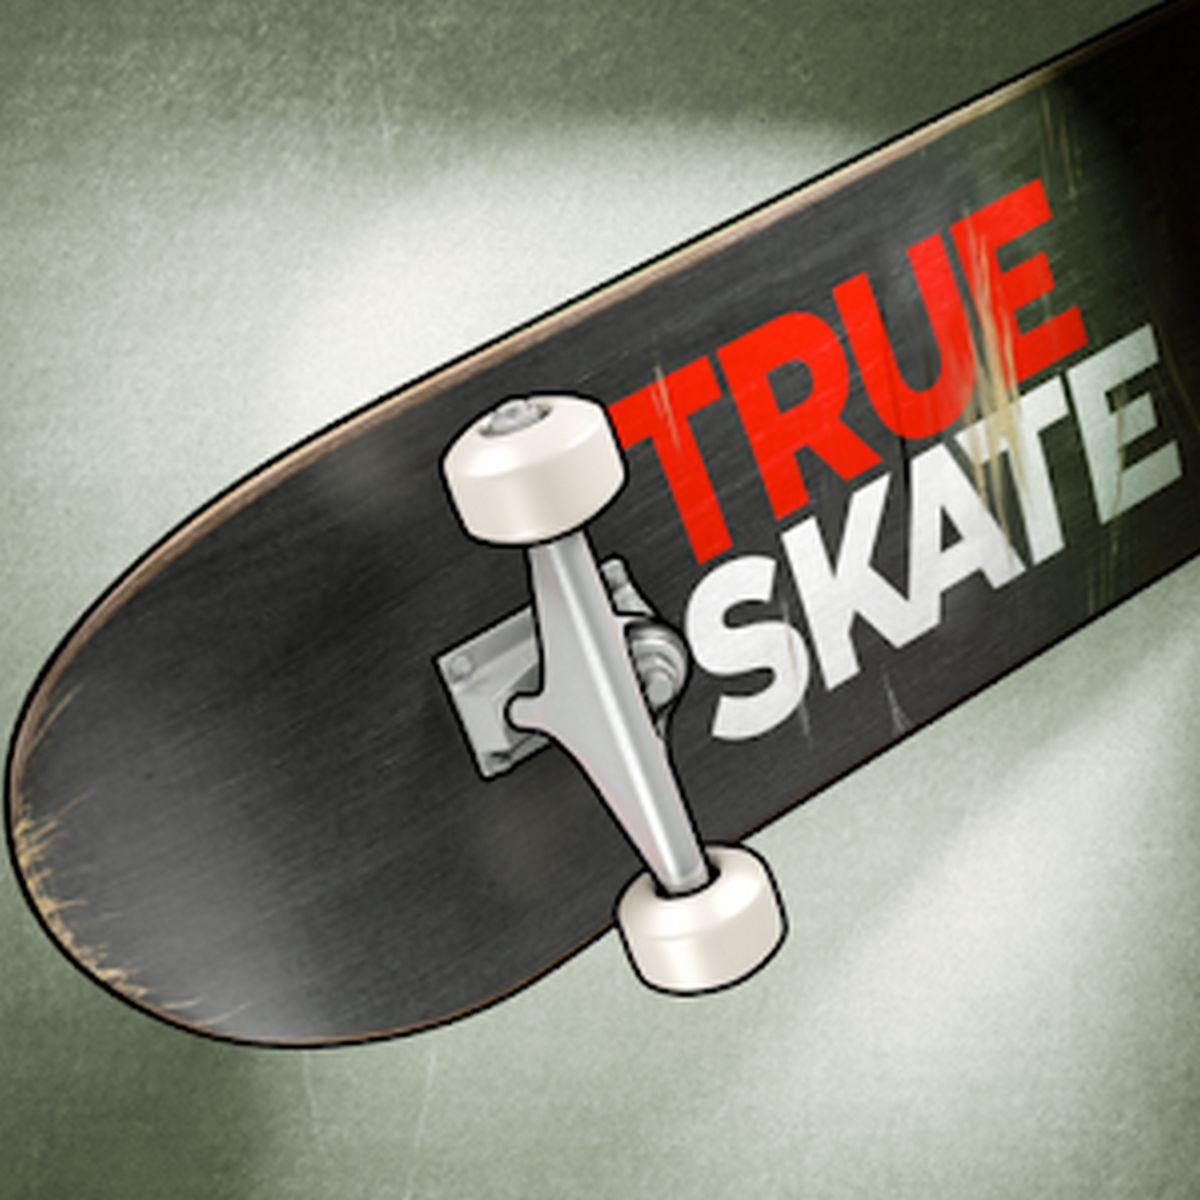 O que significa True skate?